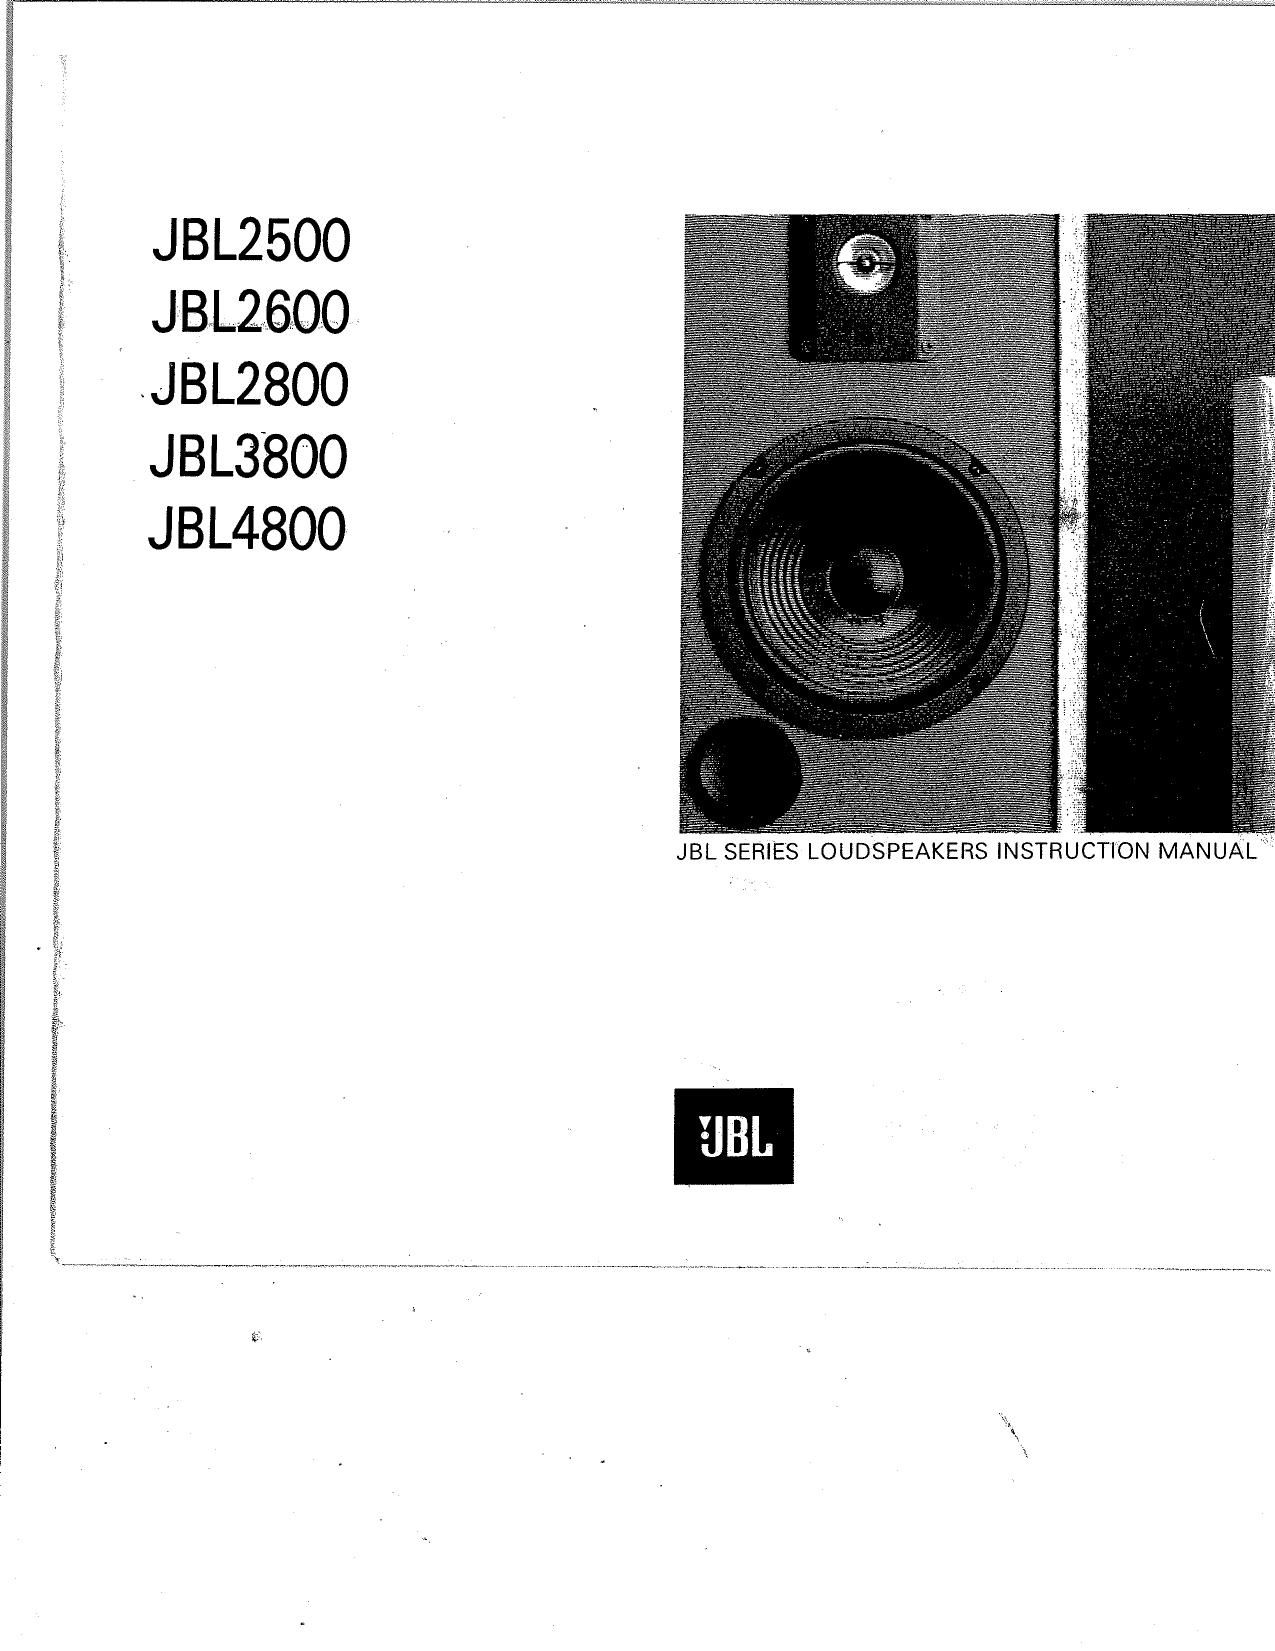 Jbl 2600 Owners Manual